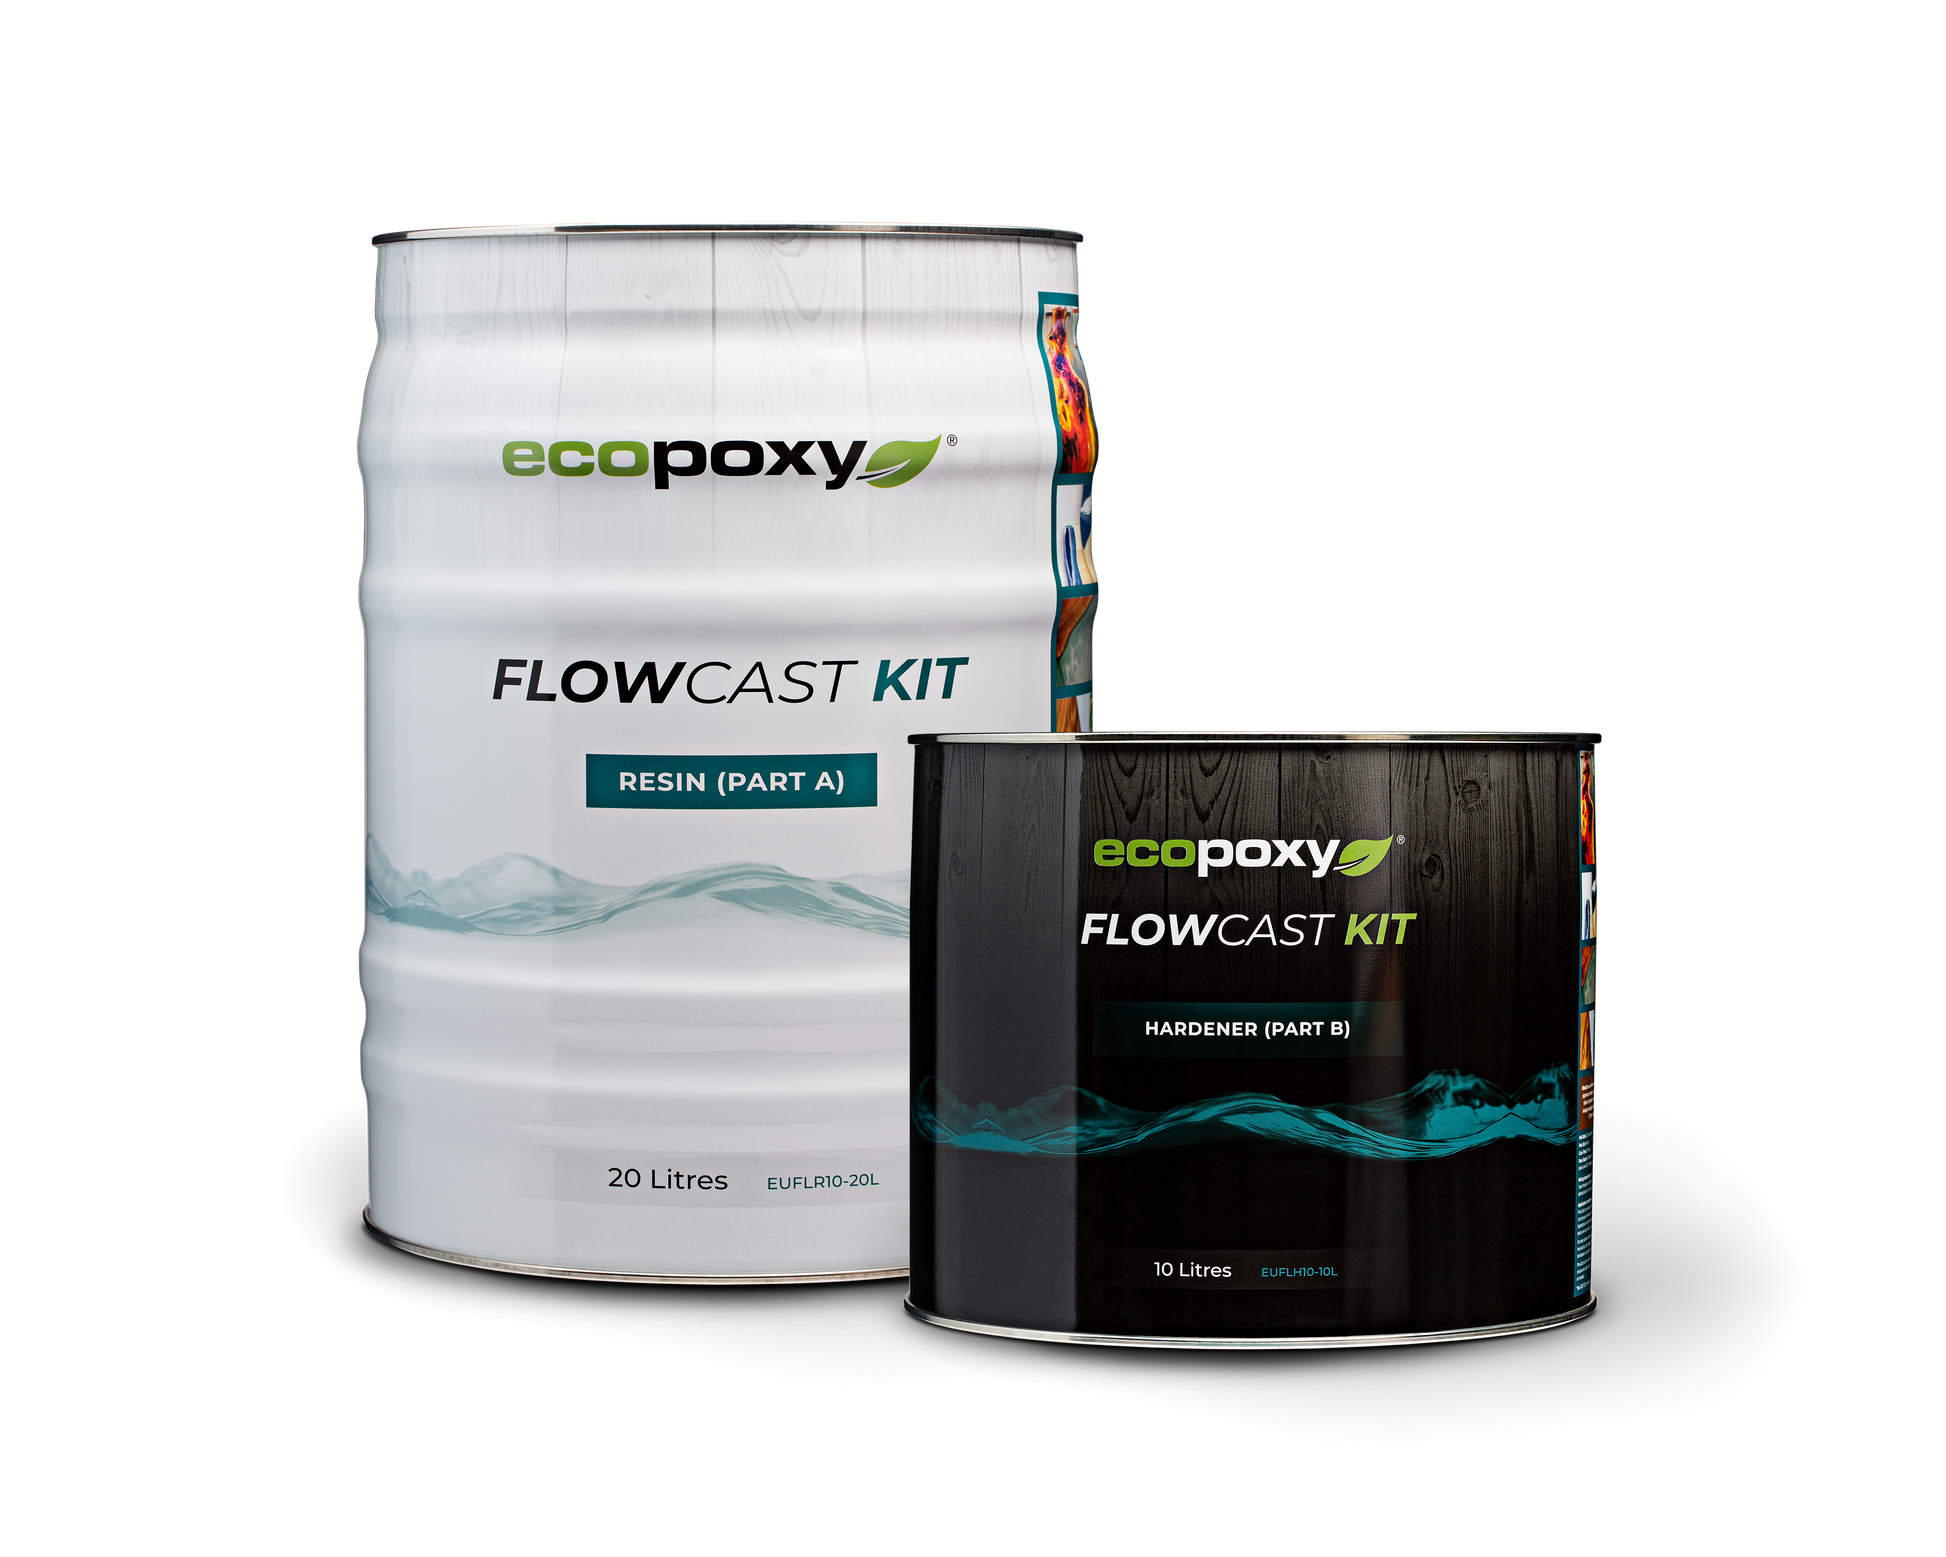 EcoPoxy Flow Cast Kits